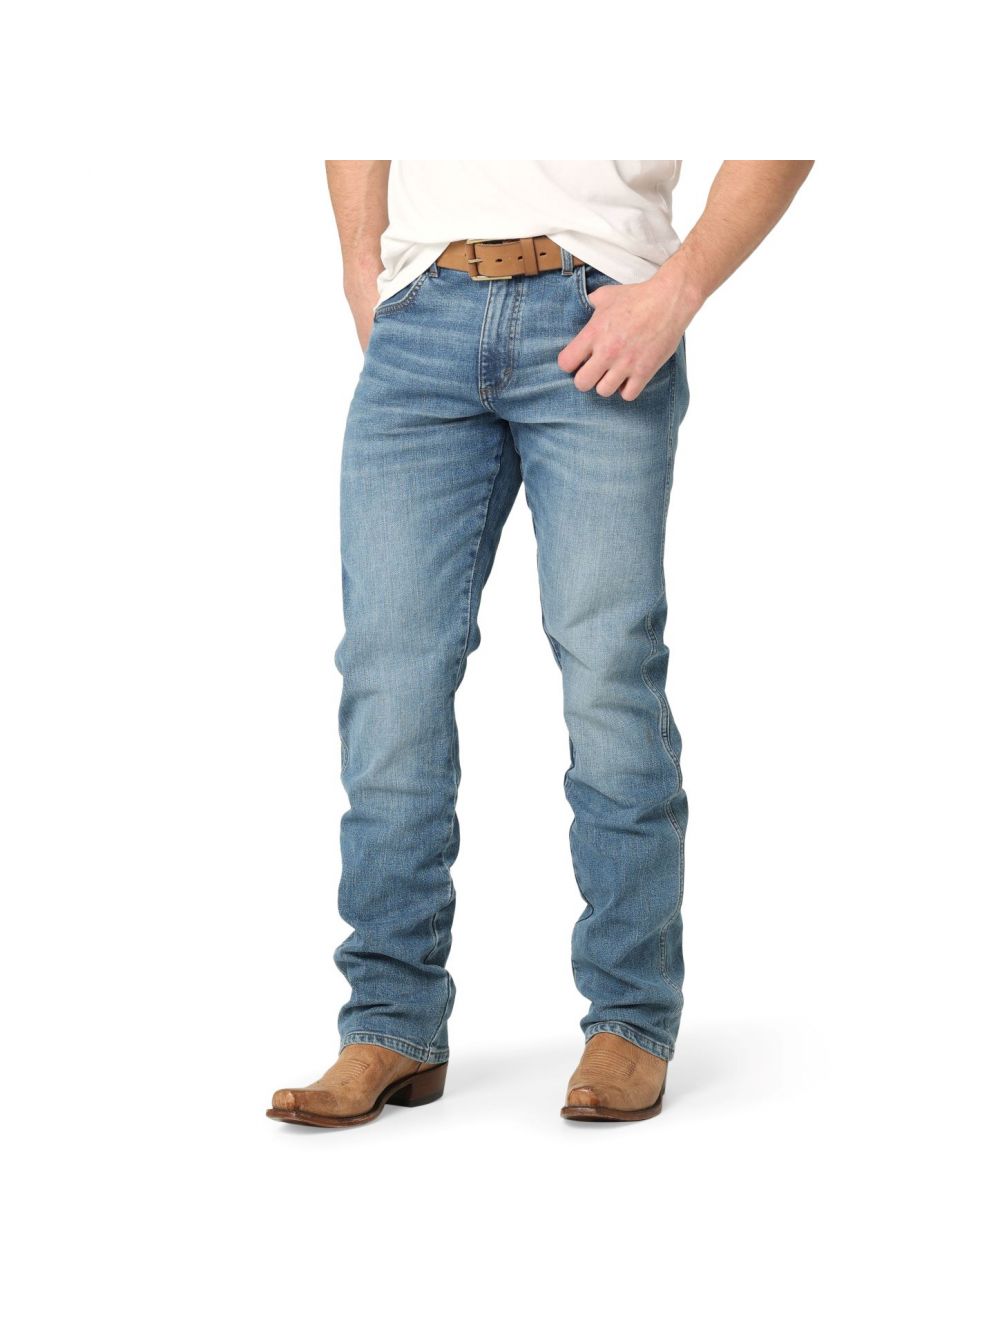 Wrangler Men's Slim Straight Jean, Slim fit 